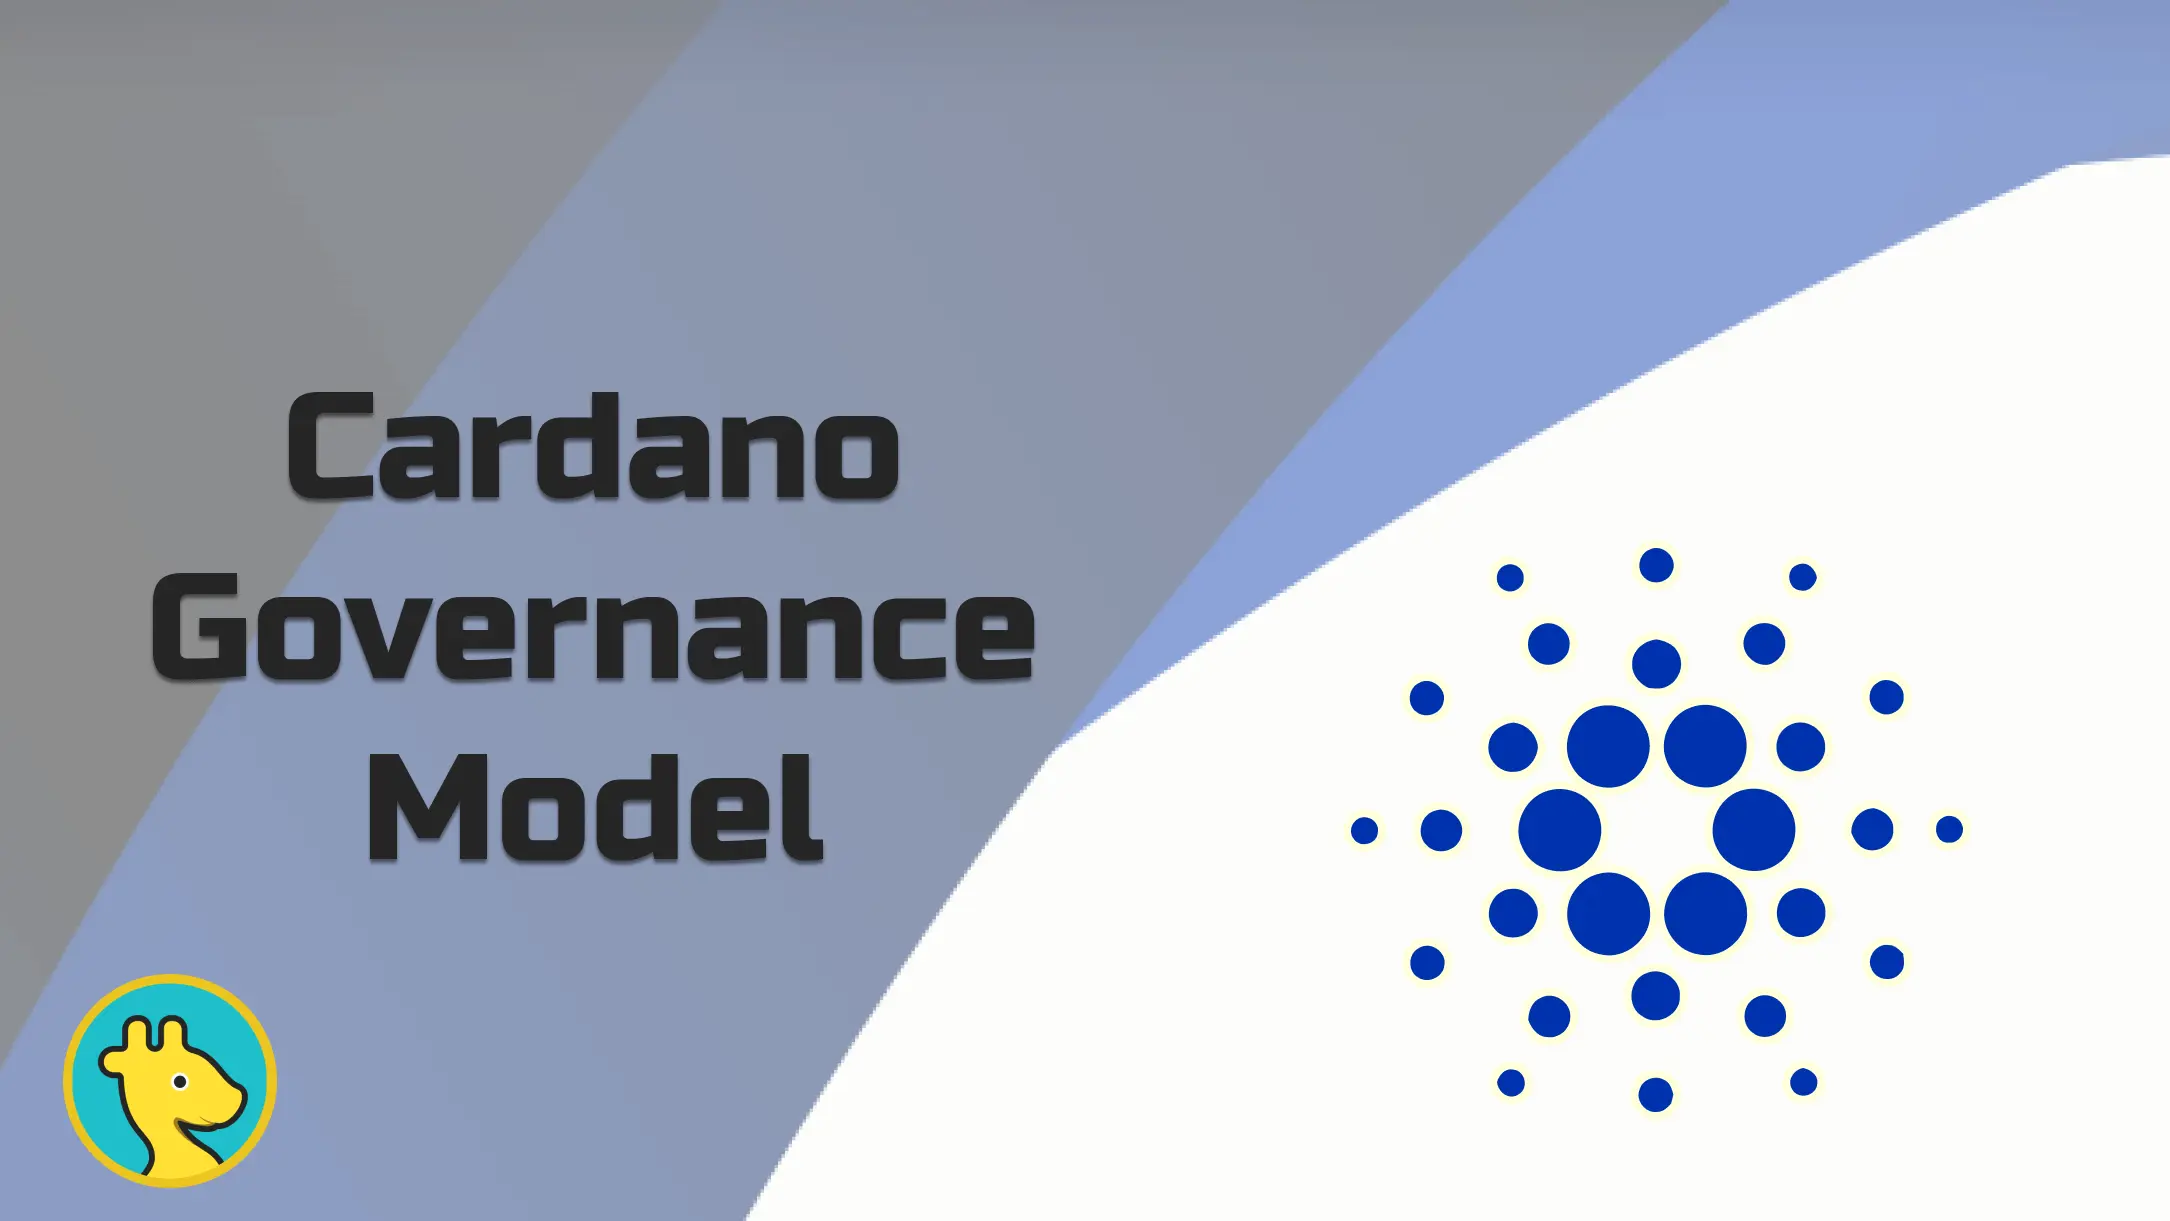 Cardano's Governance Model